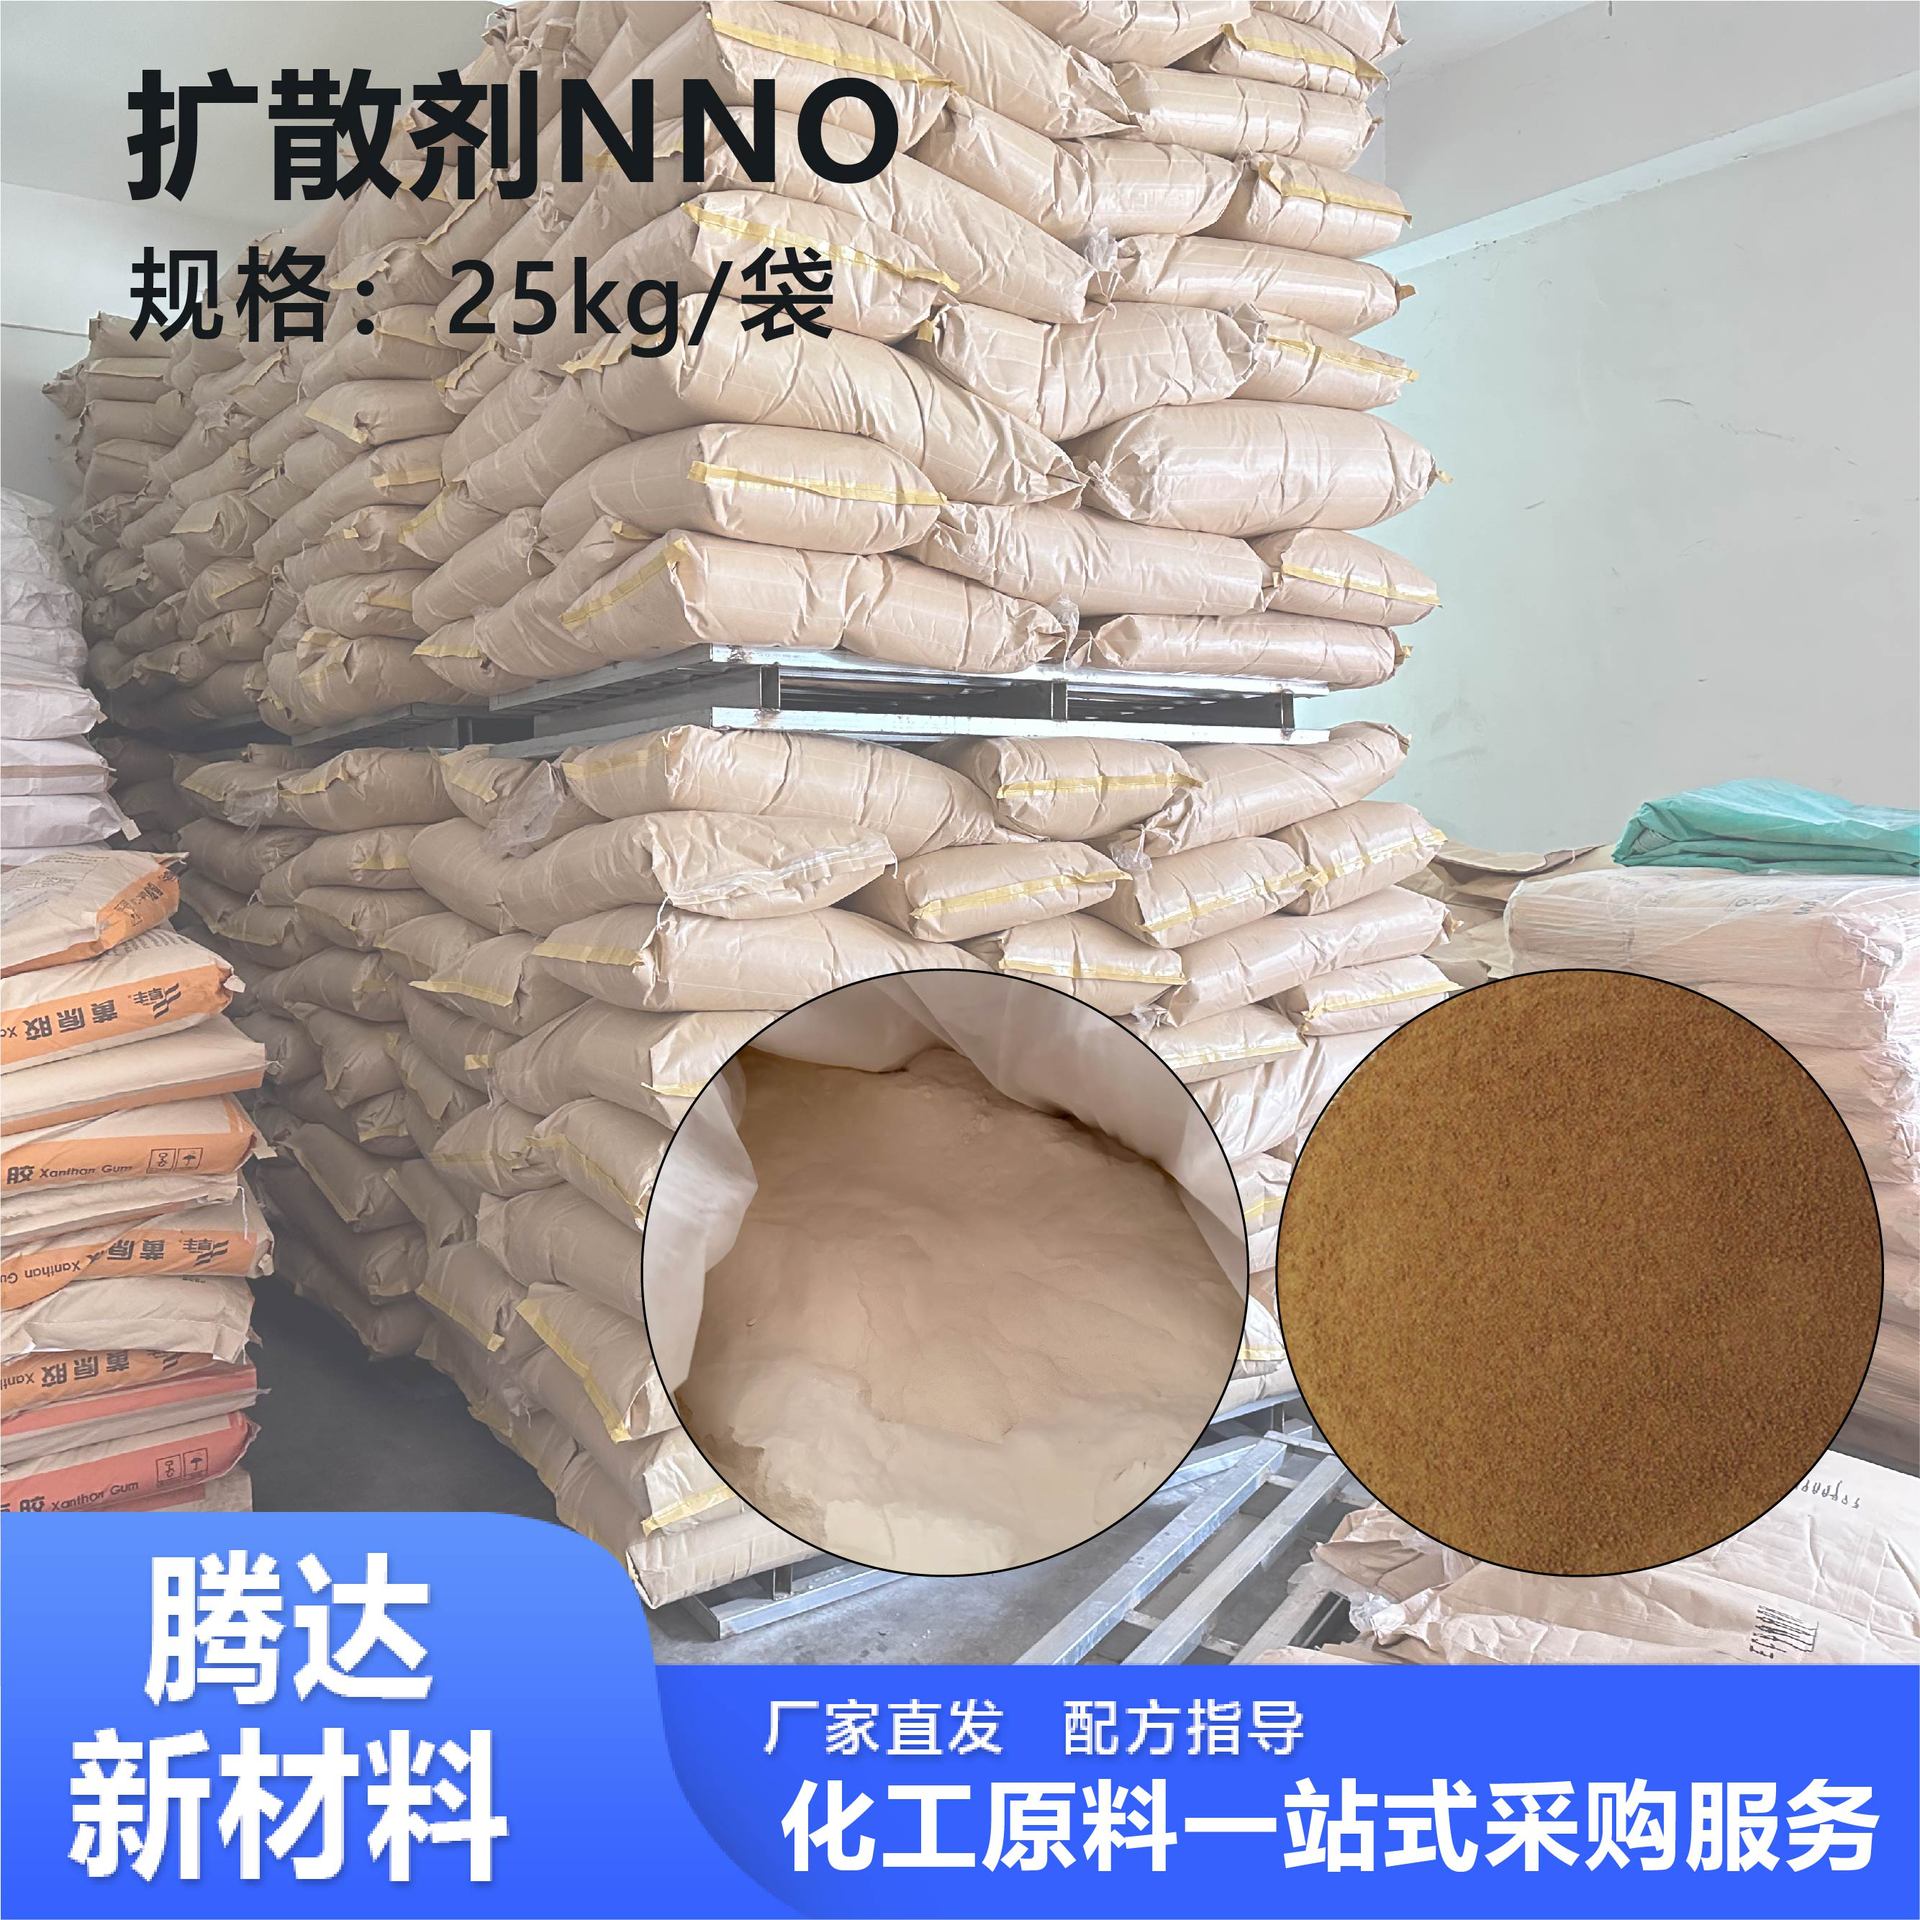 定制扩散剂高浓度环保分散剂扩散剂nno染料润滑扩散剂nno